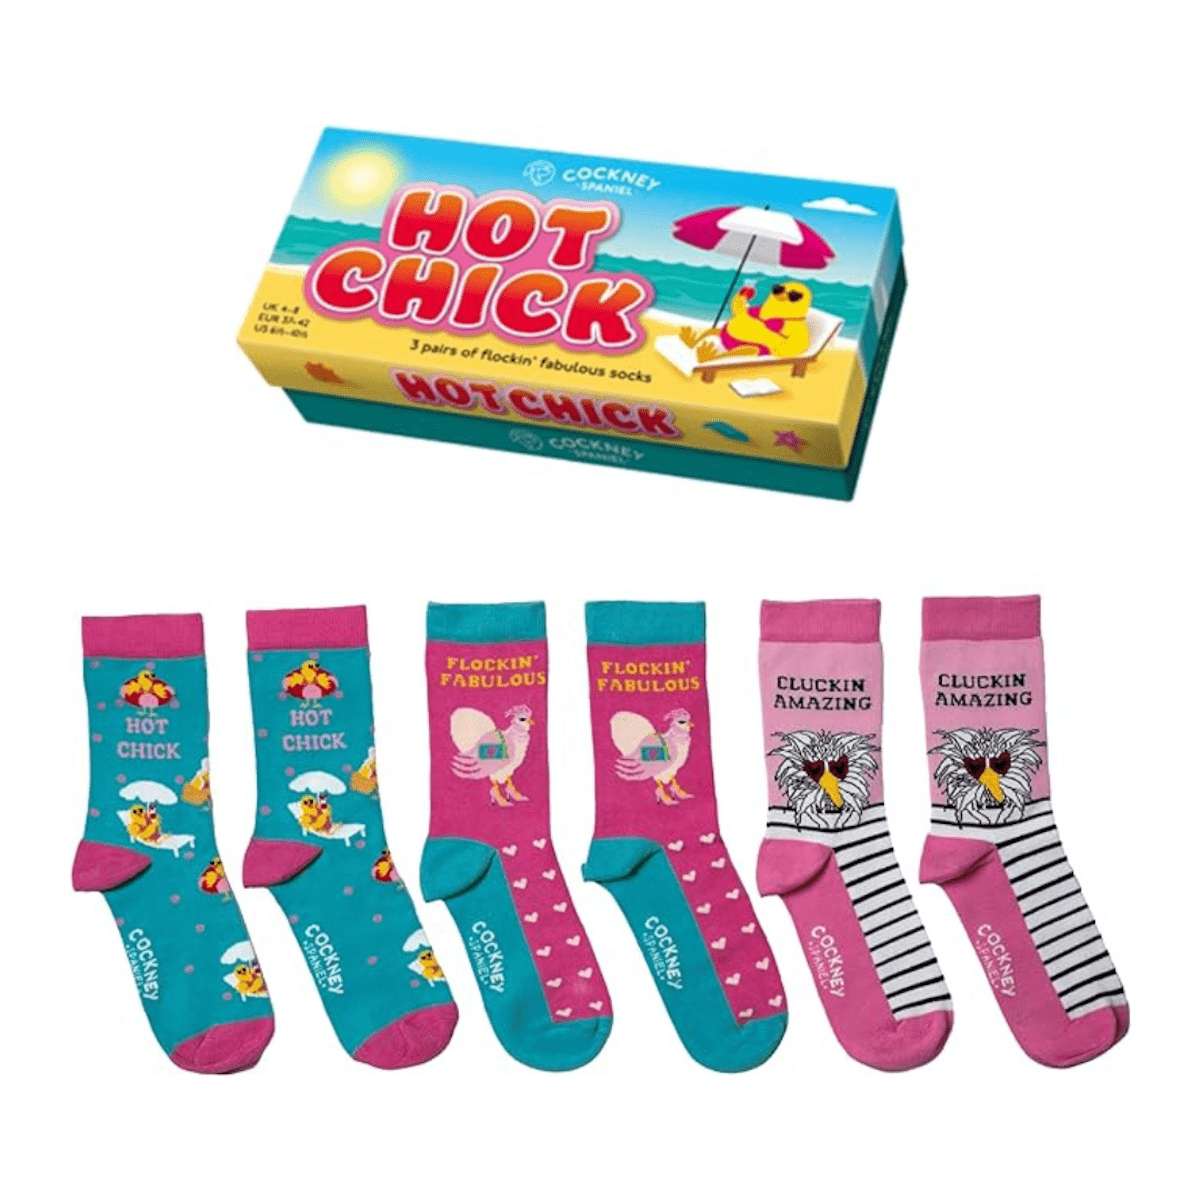 United Odd Socks Socks Hot Chick Flockin' Fabulous Gift Socks